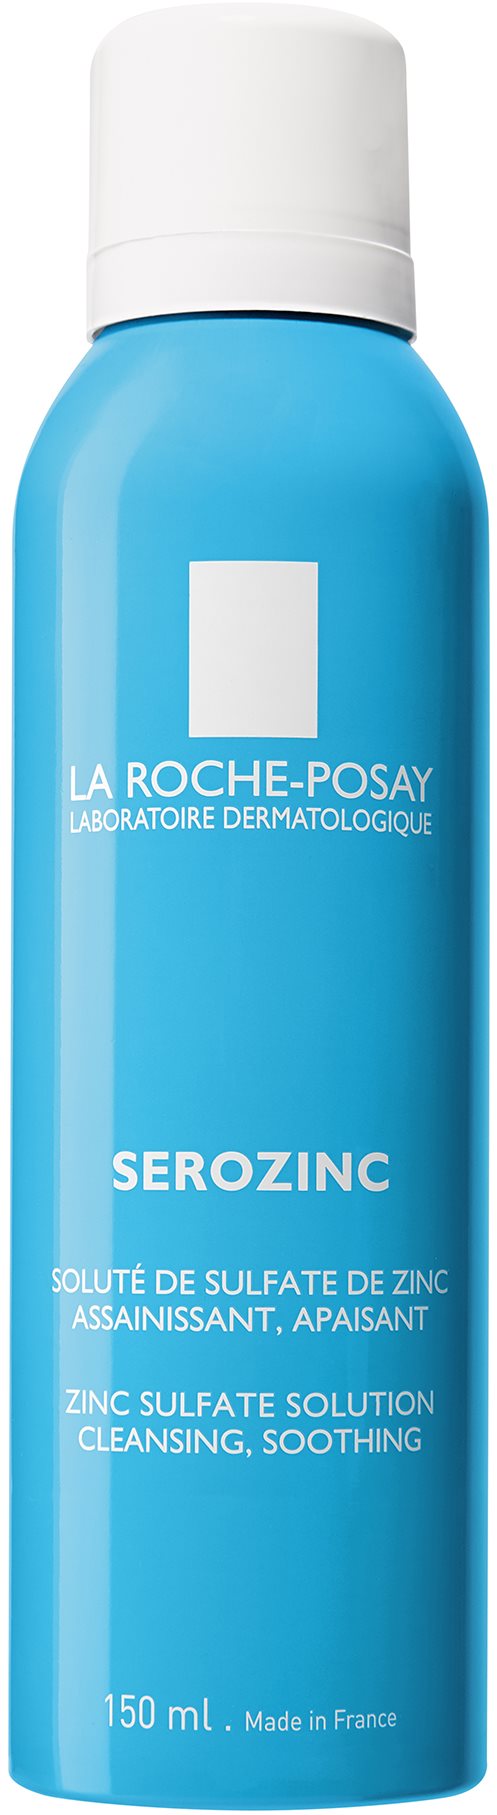 LA ROCHE-POSAY Serozinc tisztító és mattító spray 150 ml